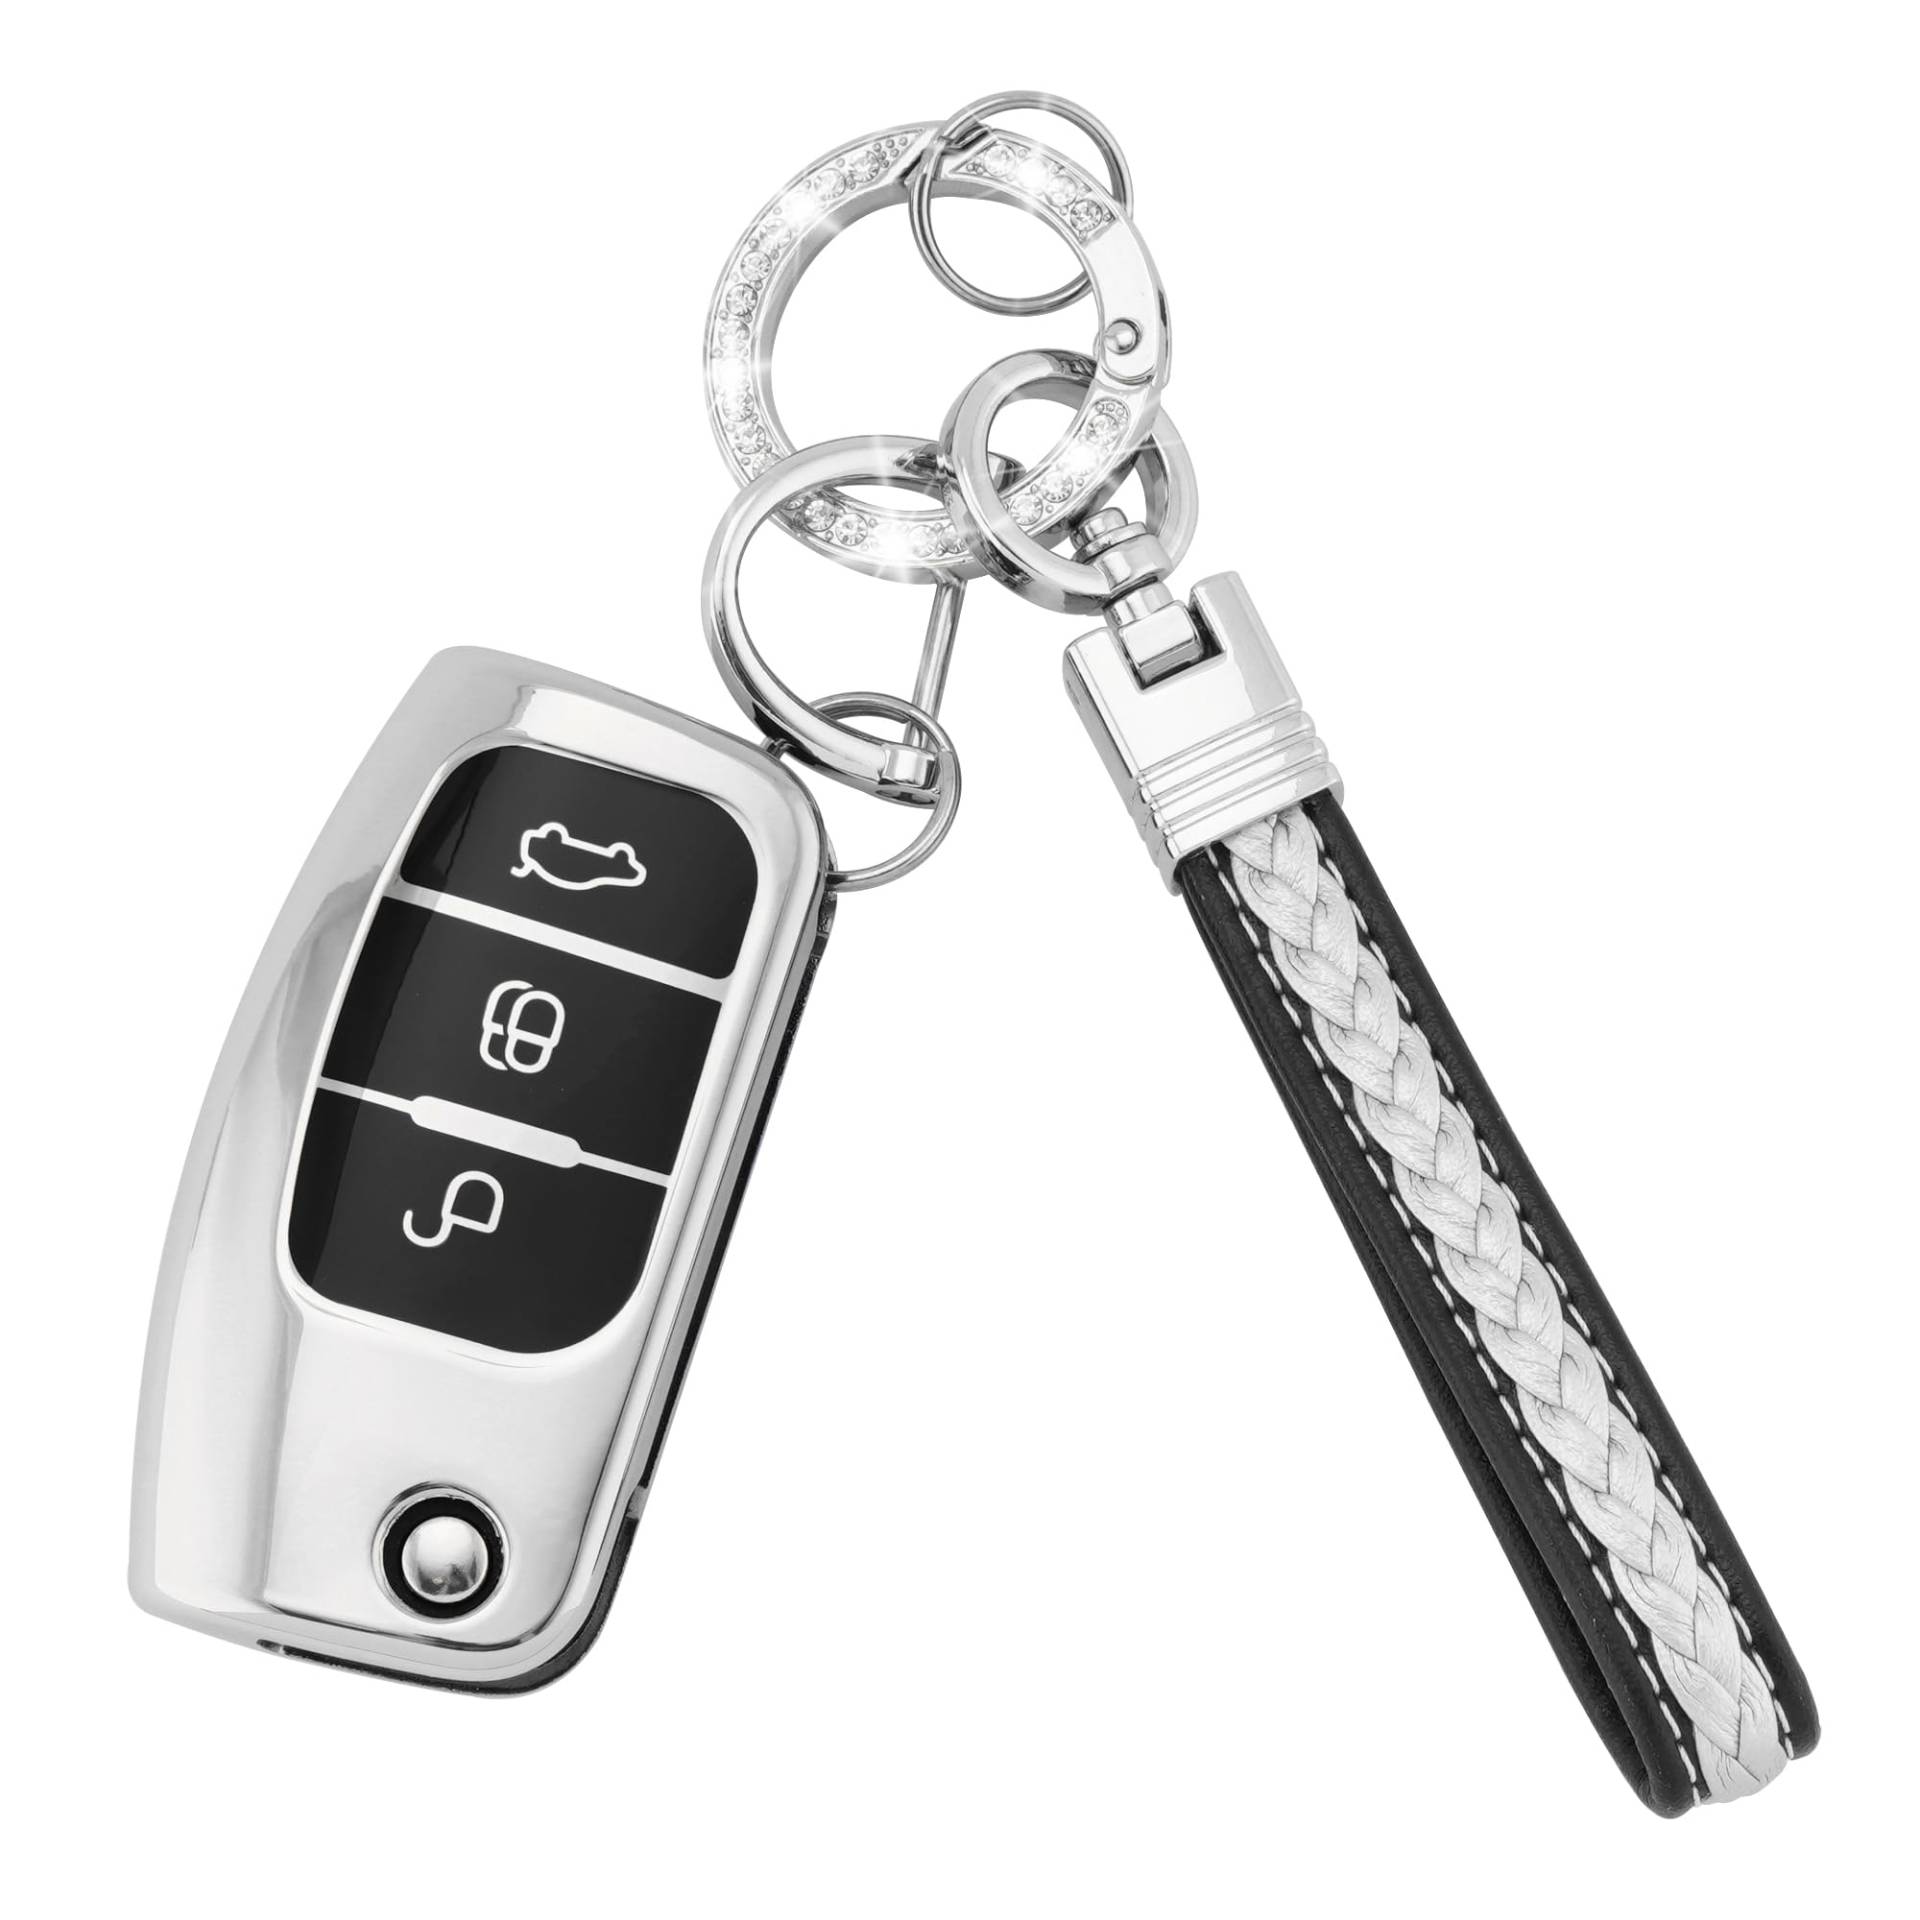 Koaudb Autoschlüssel Hülle Cover Passt für Ford Focus Fiesta Galaxy Kuga C-Max S-Max Mondeo MK4 3 Tasten Schlüsseletui TPU Schlüsselhülle mit Schlüsselanhänger-Lanyard (CL-Frd-3F-S) von Koaudb